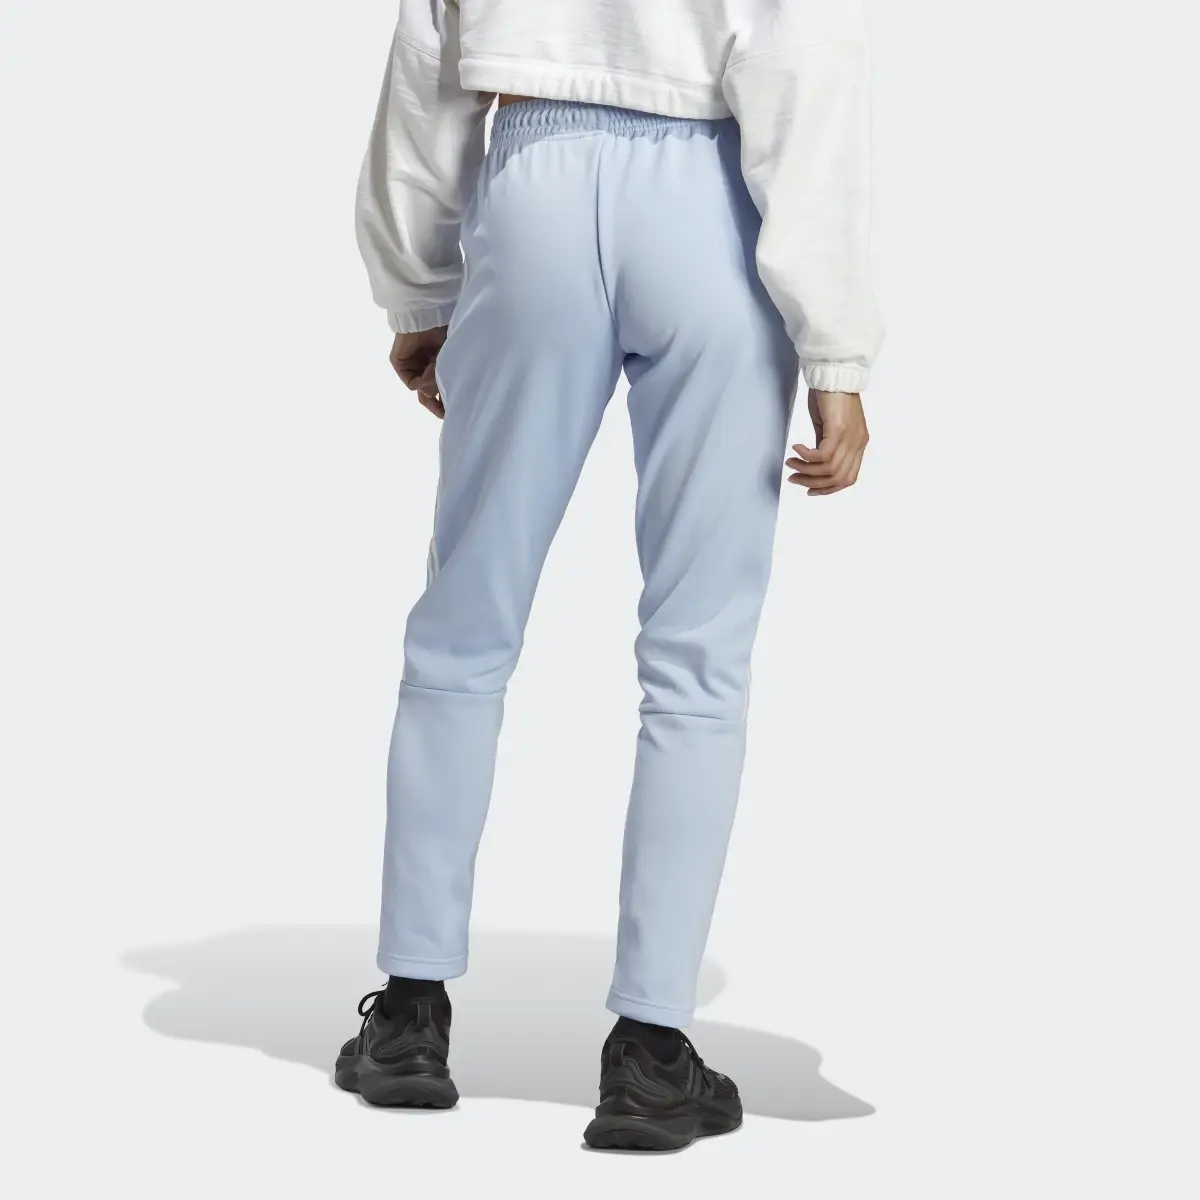 Adidas Tiro Suit Up Lifestyle Track Pant. 3